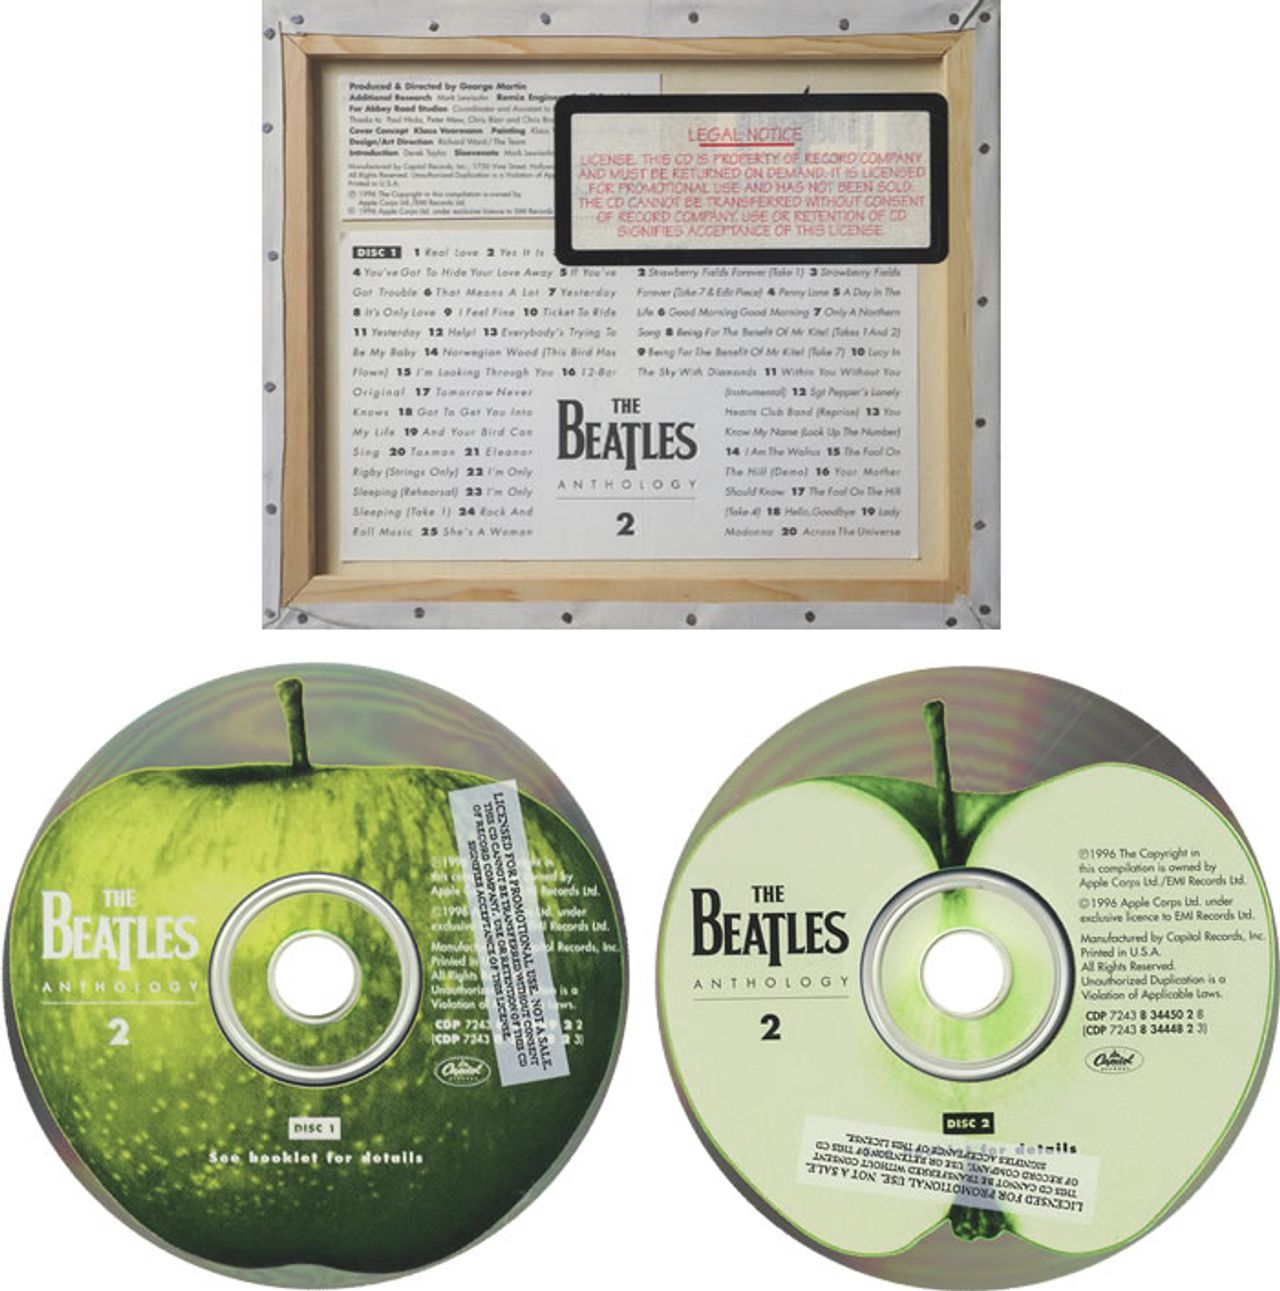 The Beatles Anthology 2 US Promo 2-CD album set